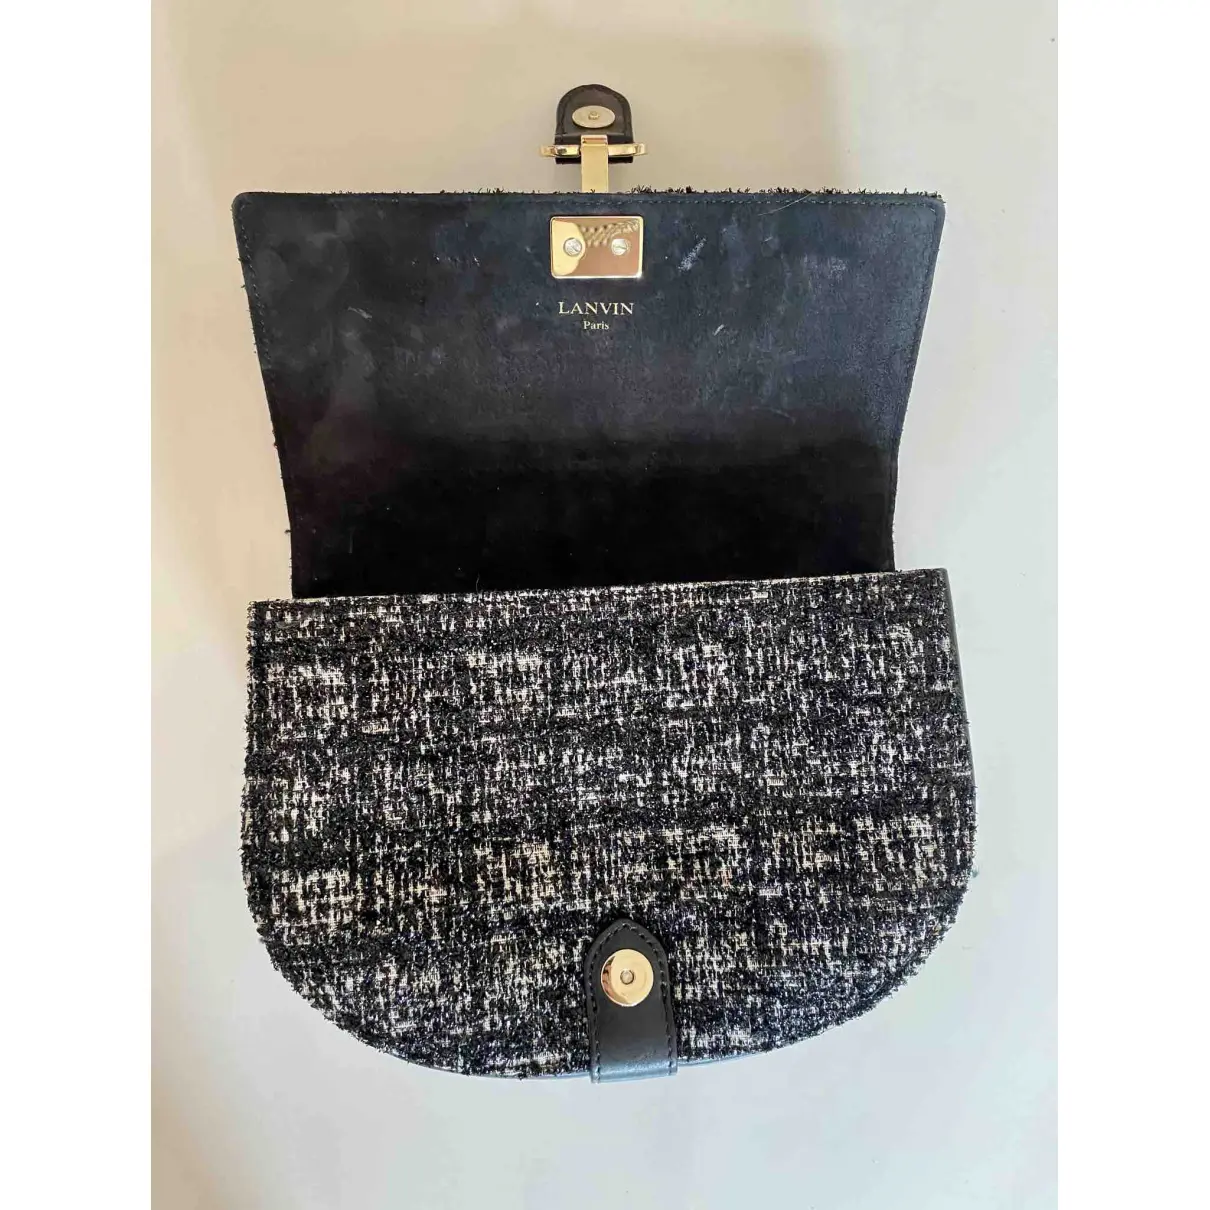 Buy Lanvin Lien tweed bag online